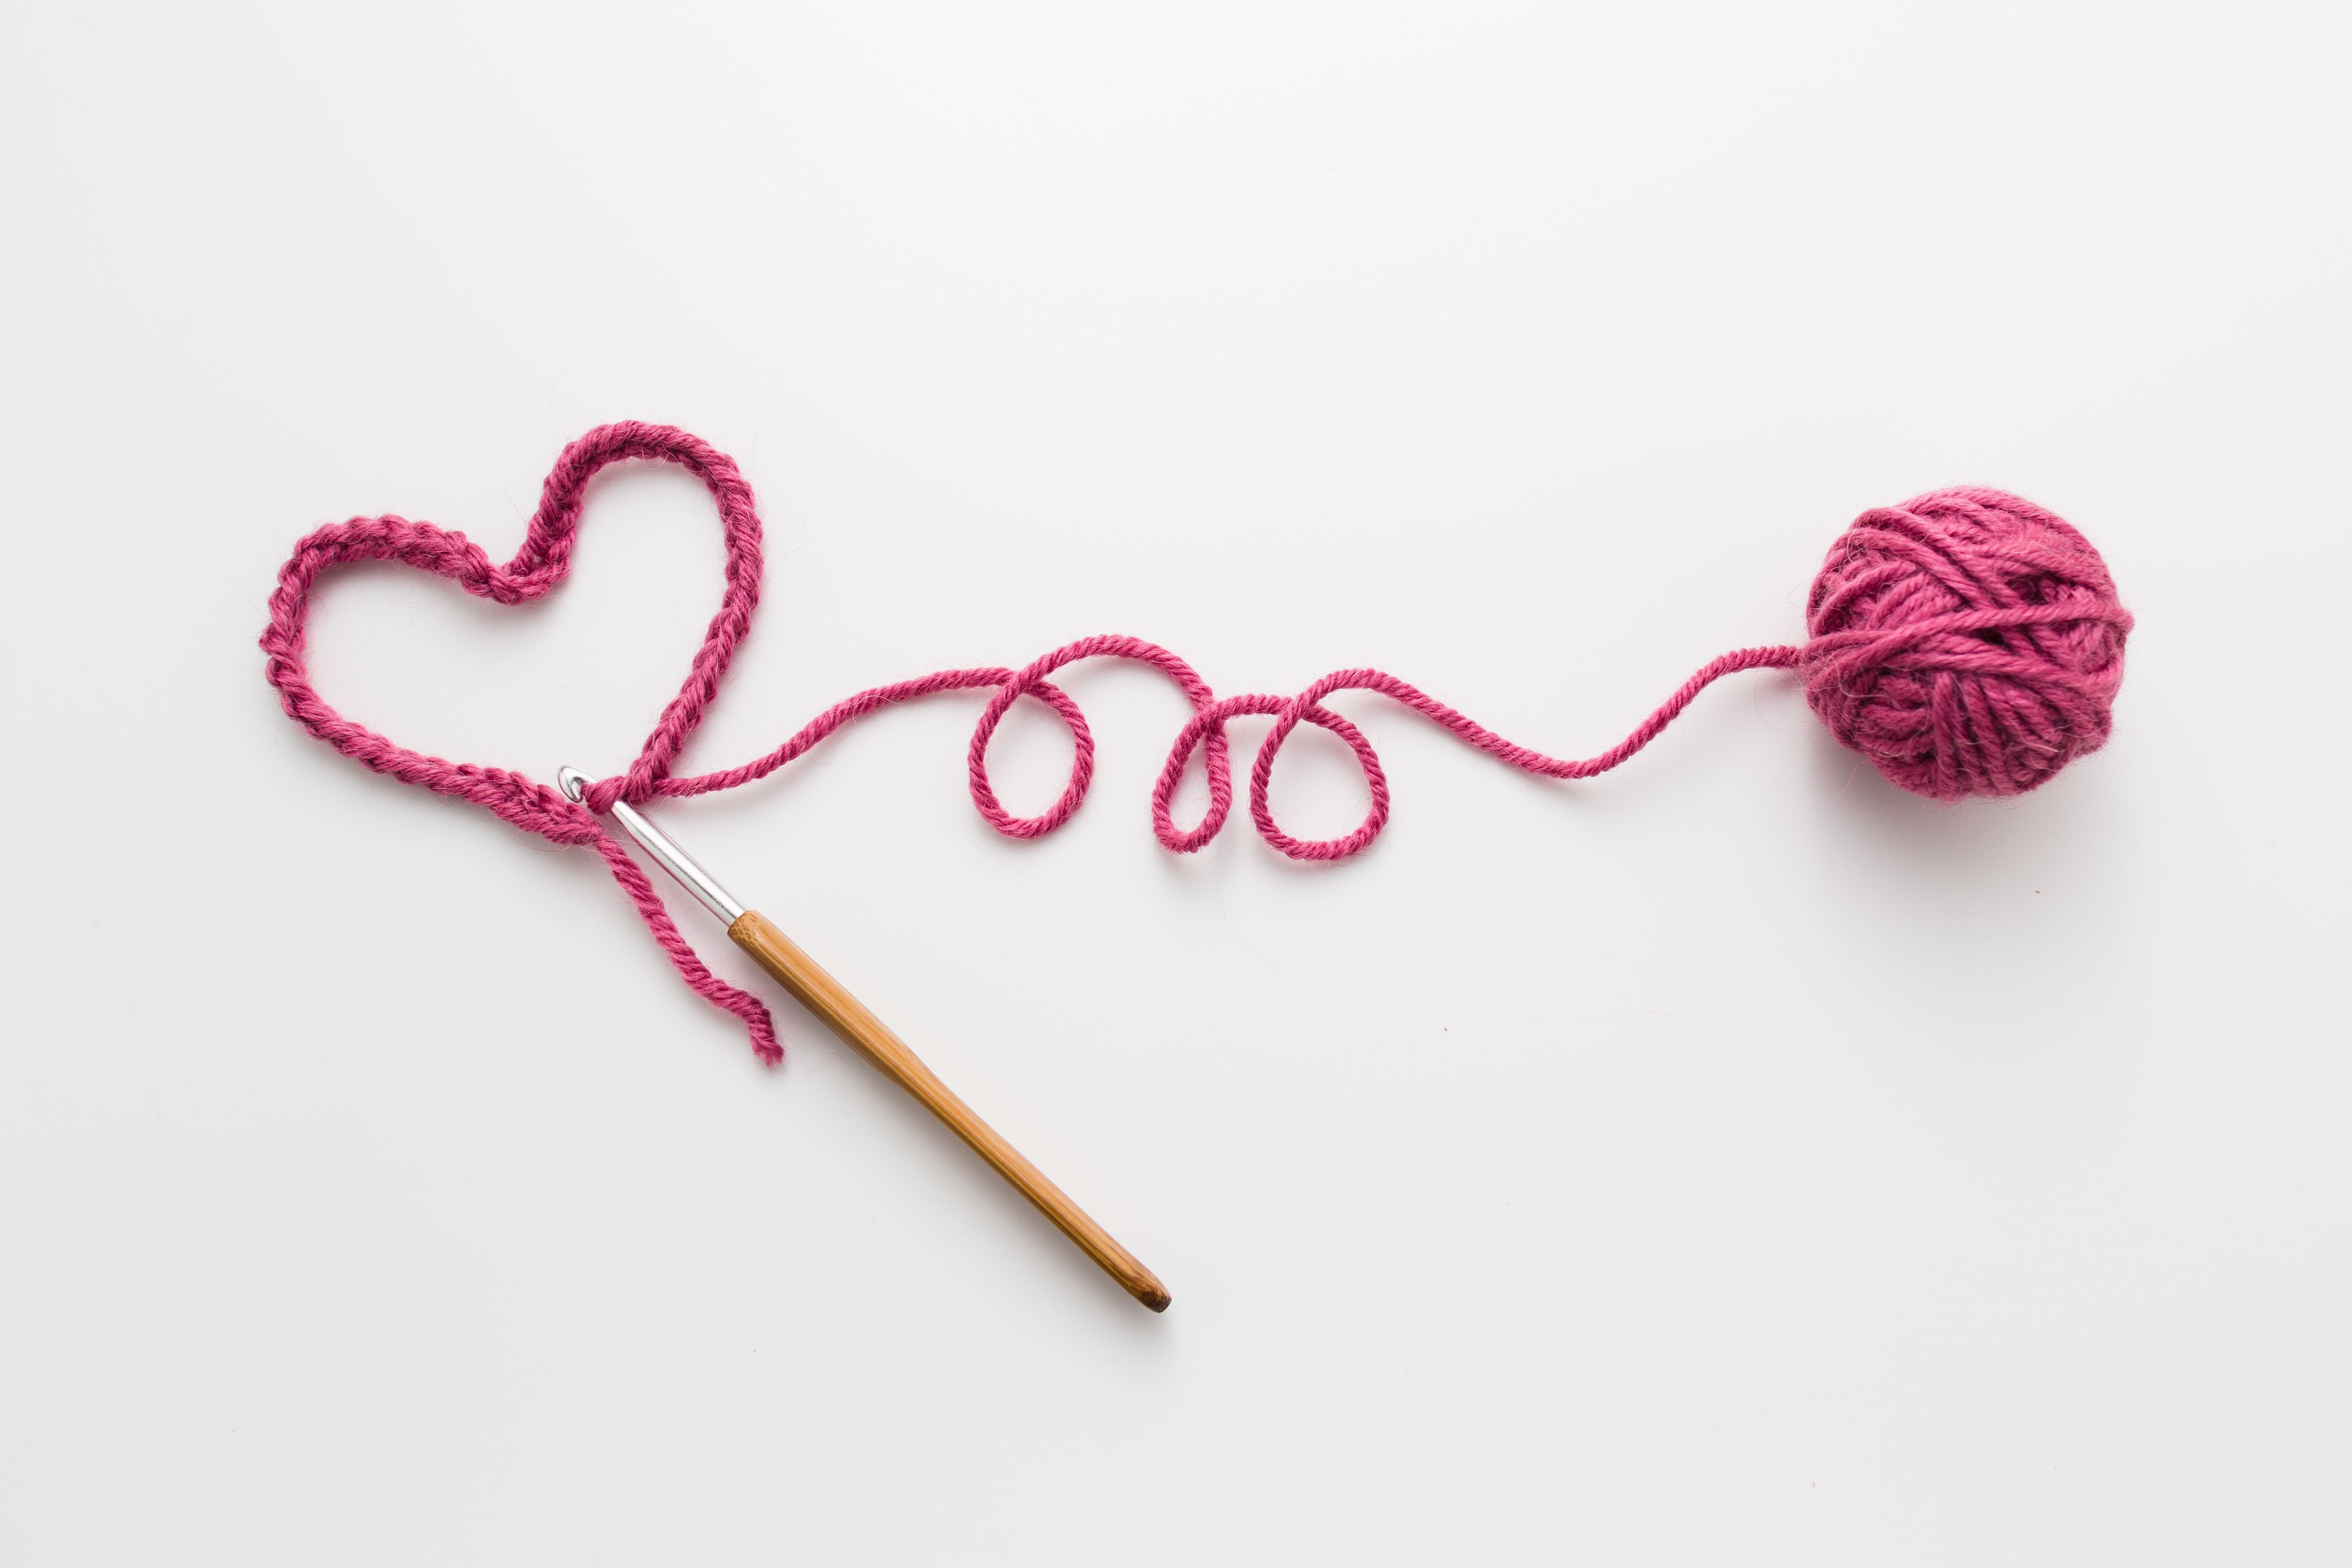 How to crochet - crochet for beginners